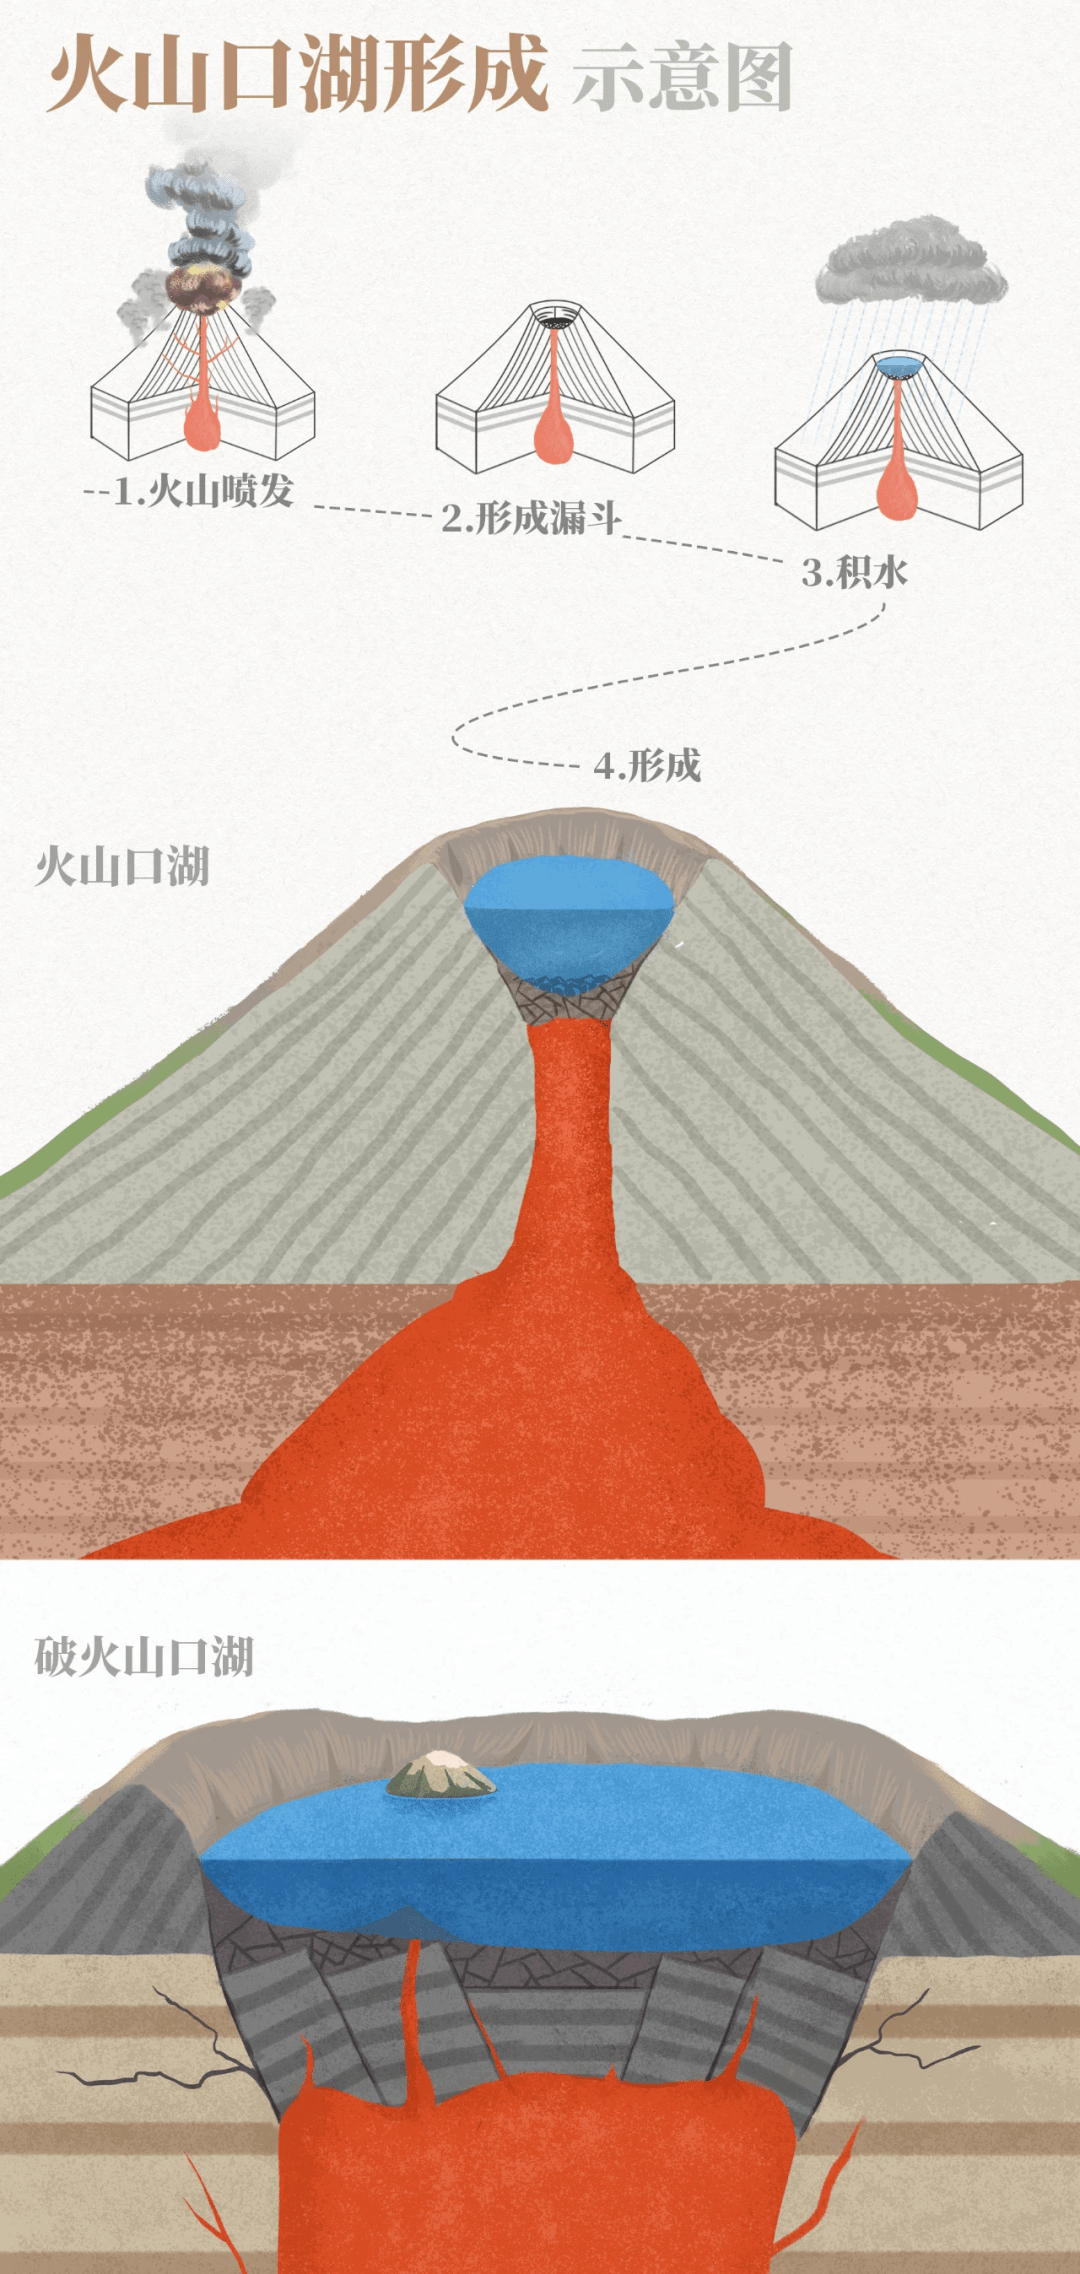 日本樱岛火山大规模喷发火山喷发的类型火山灰对我们有什么影响为什么